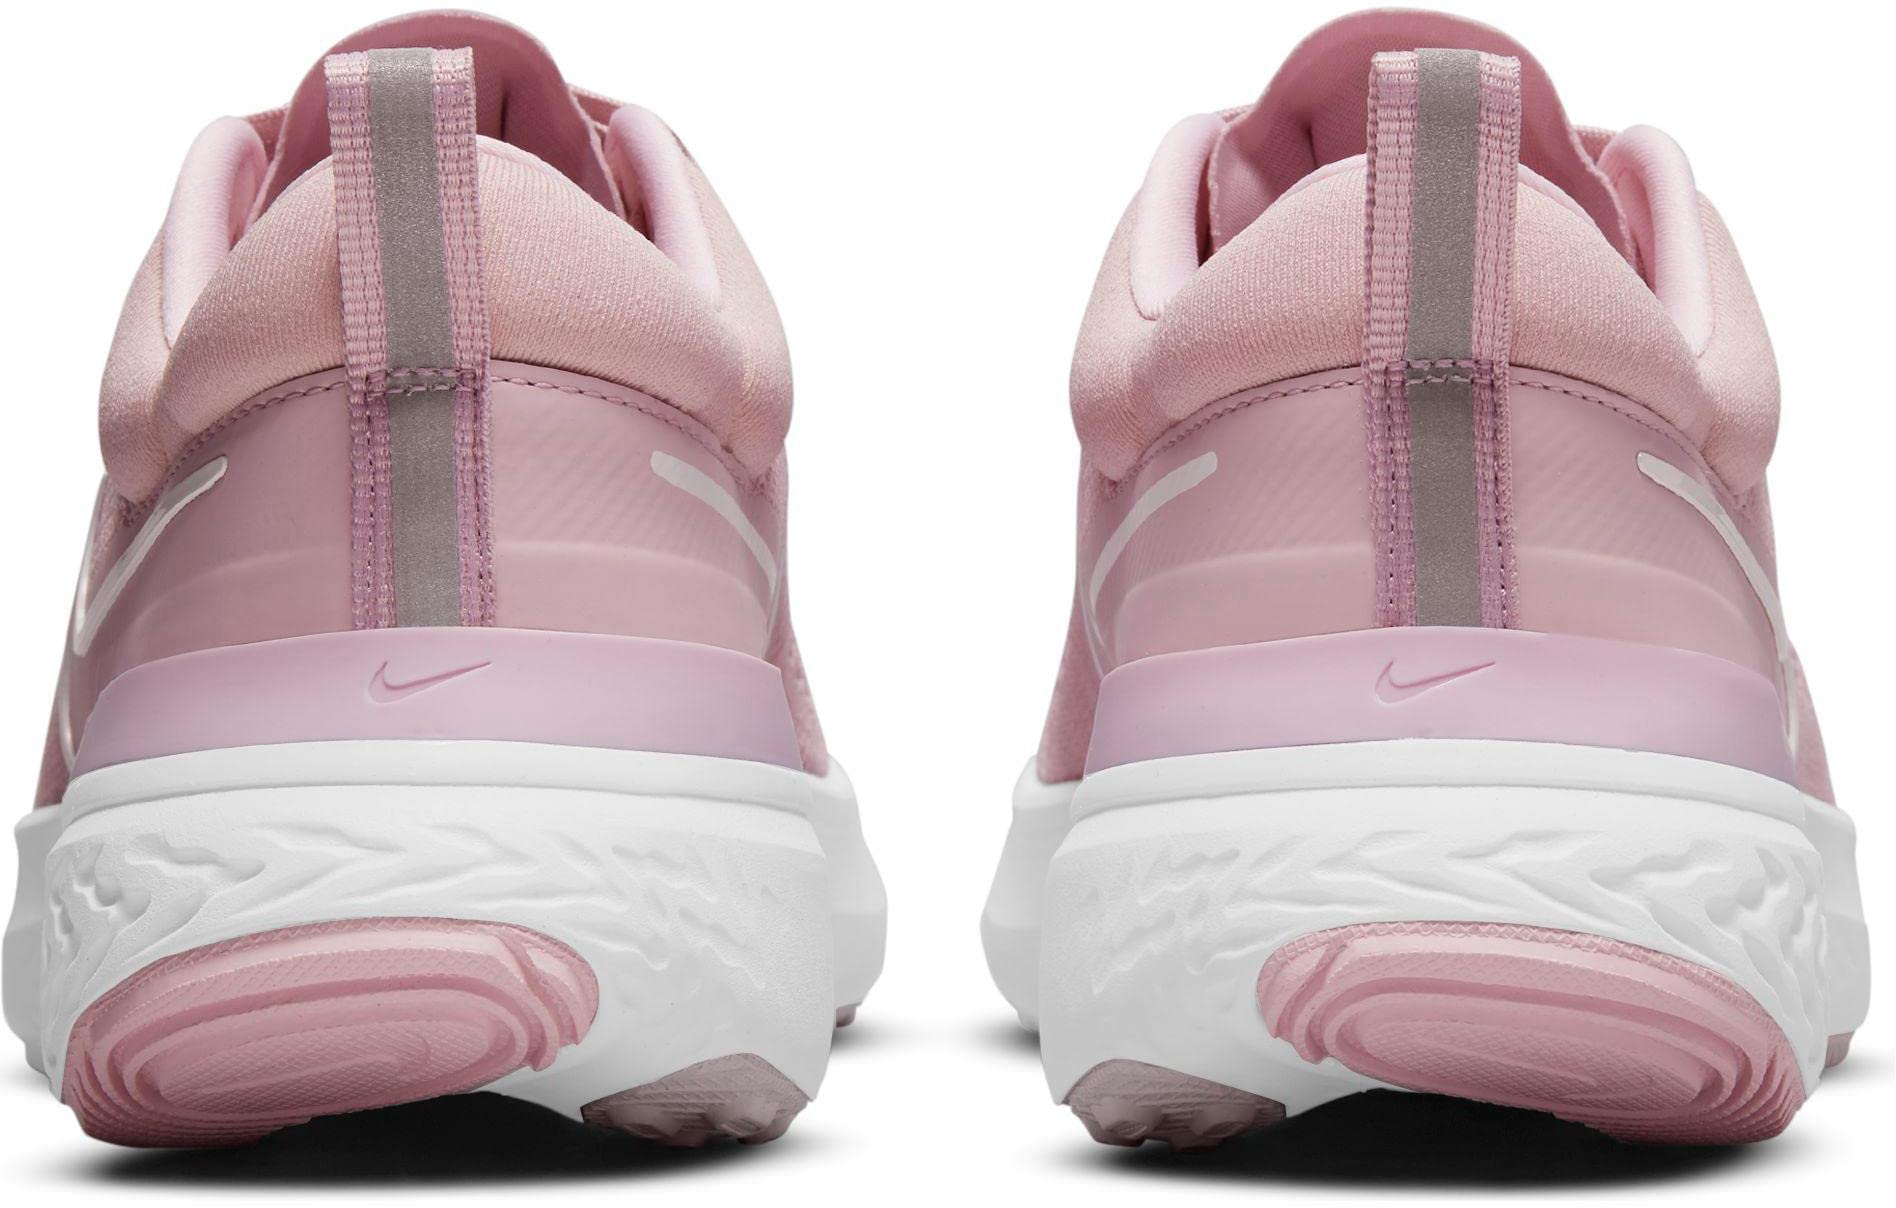 Nike React Miler 2 Womens Casual Running Shoe CW7136-500 10.5